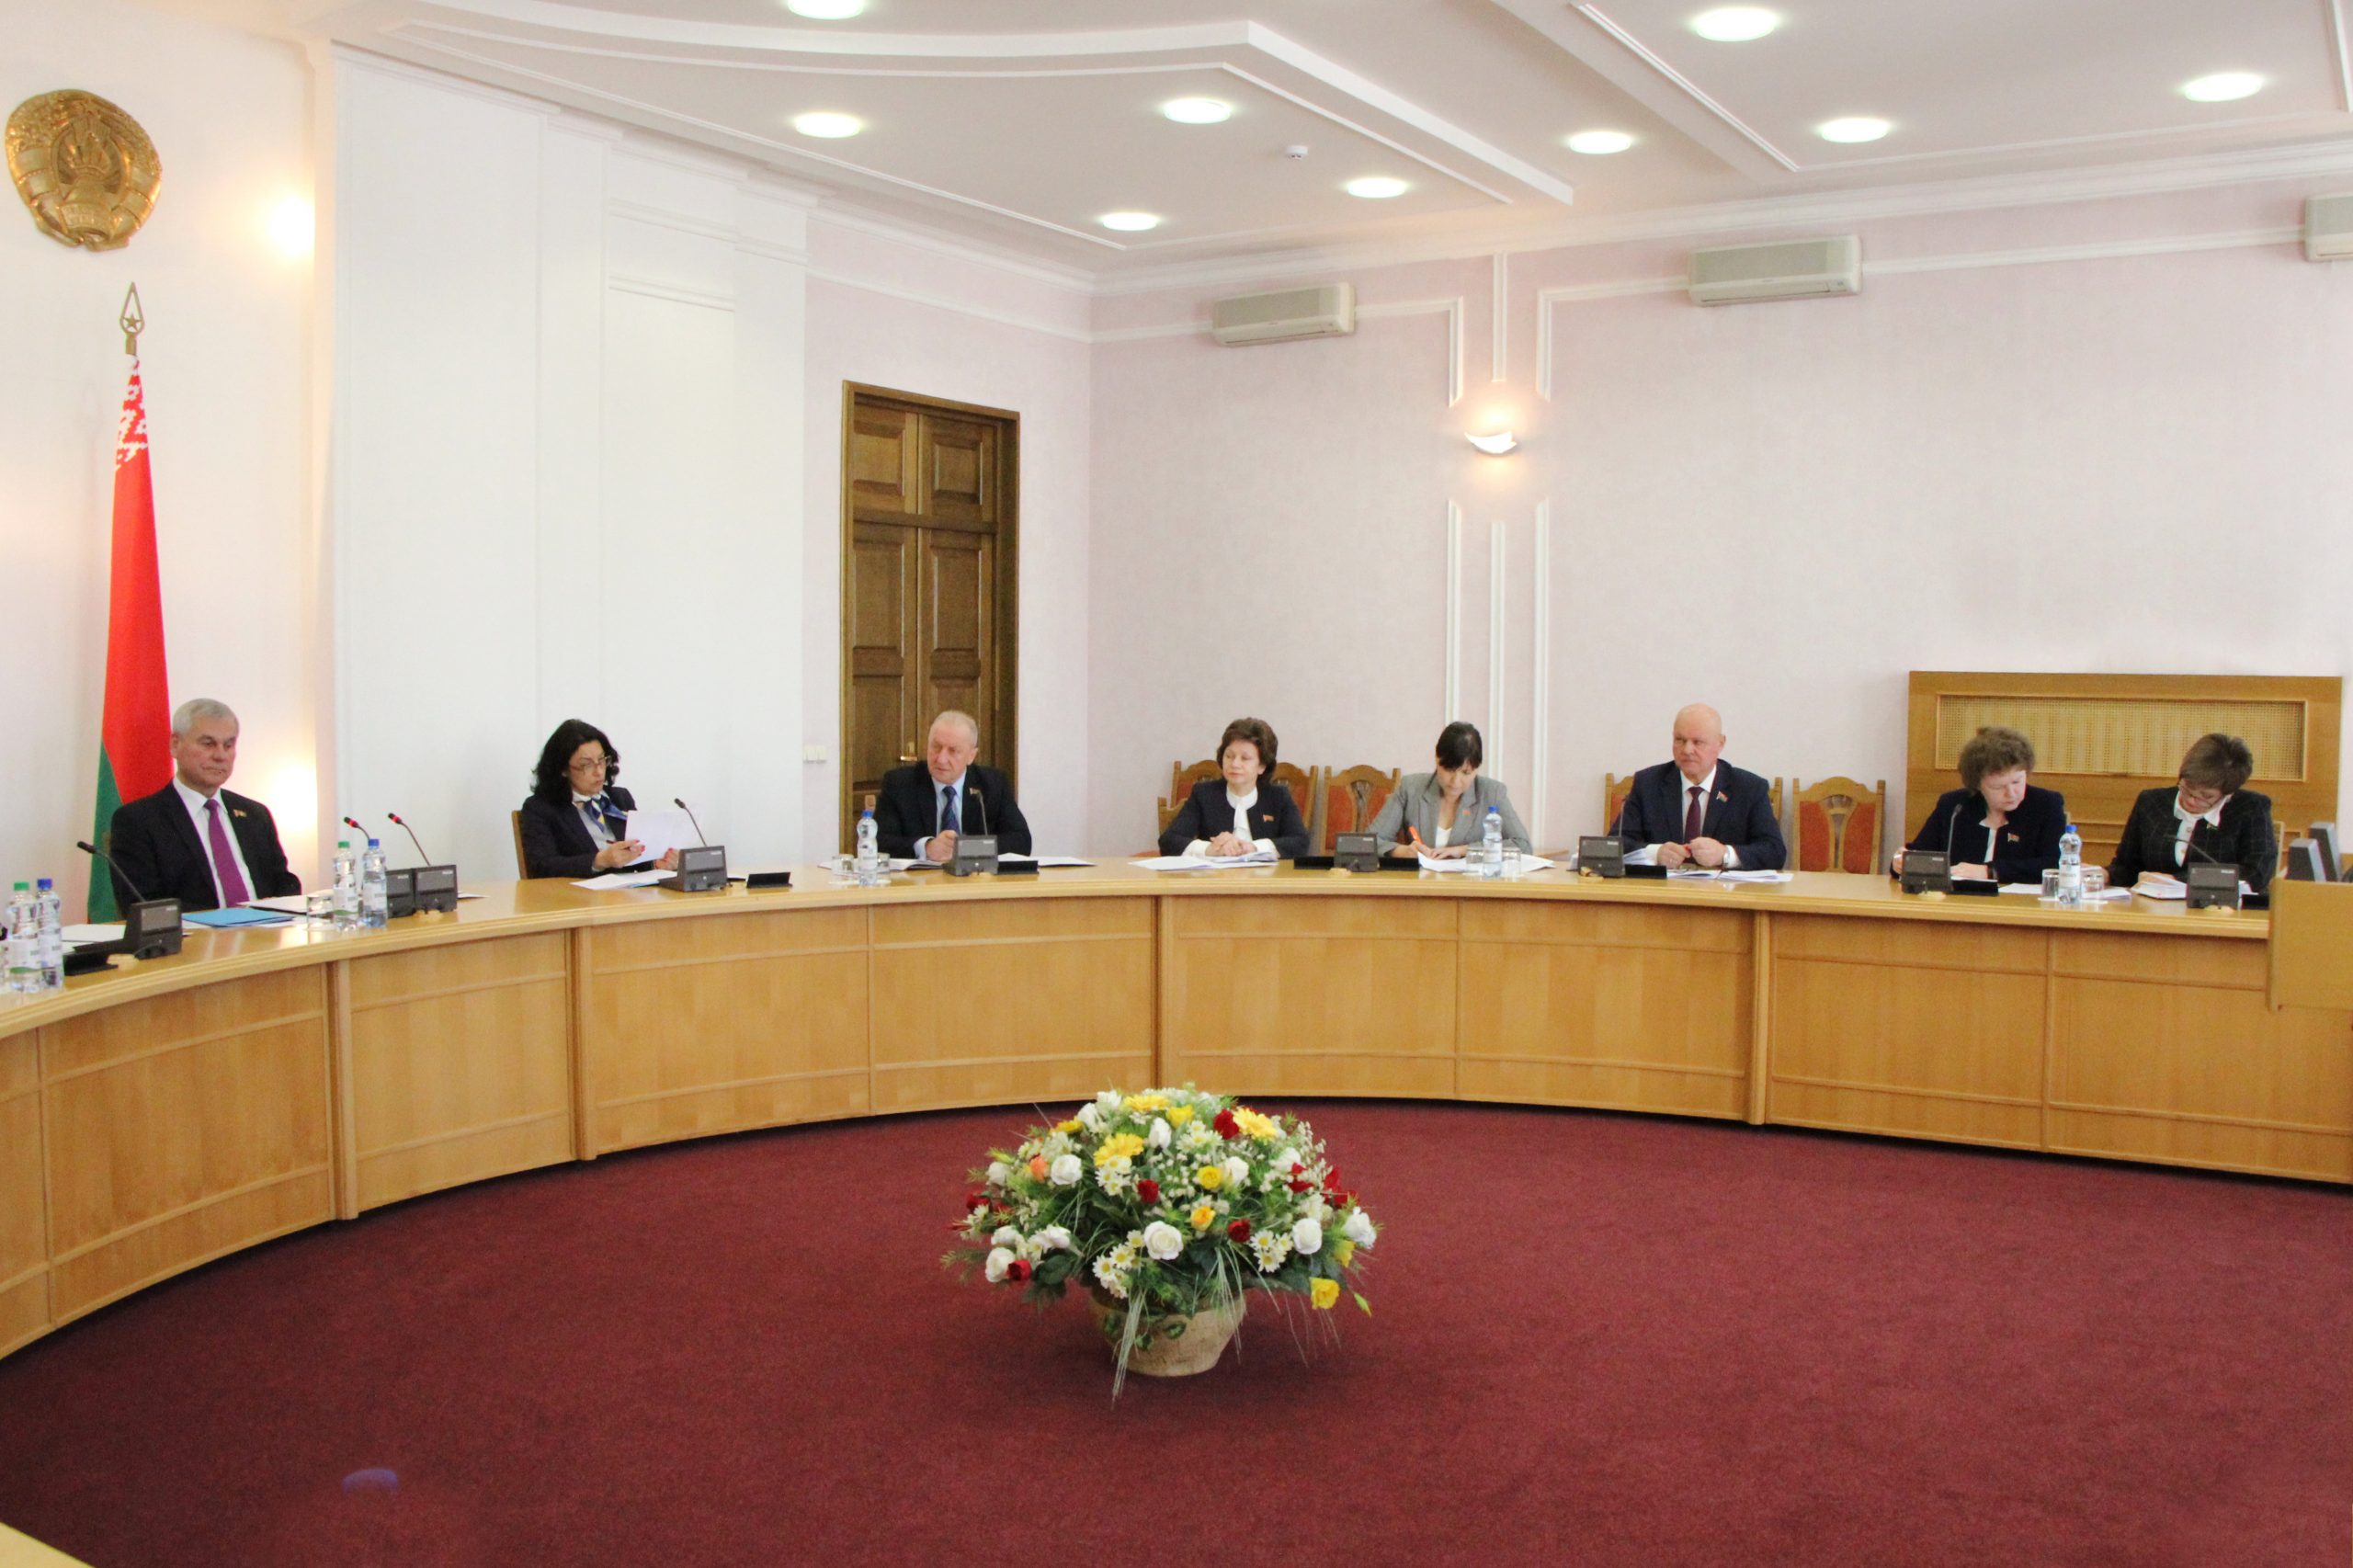 А. В. Савиных принял участие в заседание Совета Палаты представителей Национального собрания Республики Беларусь